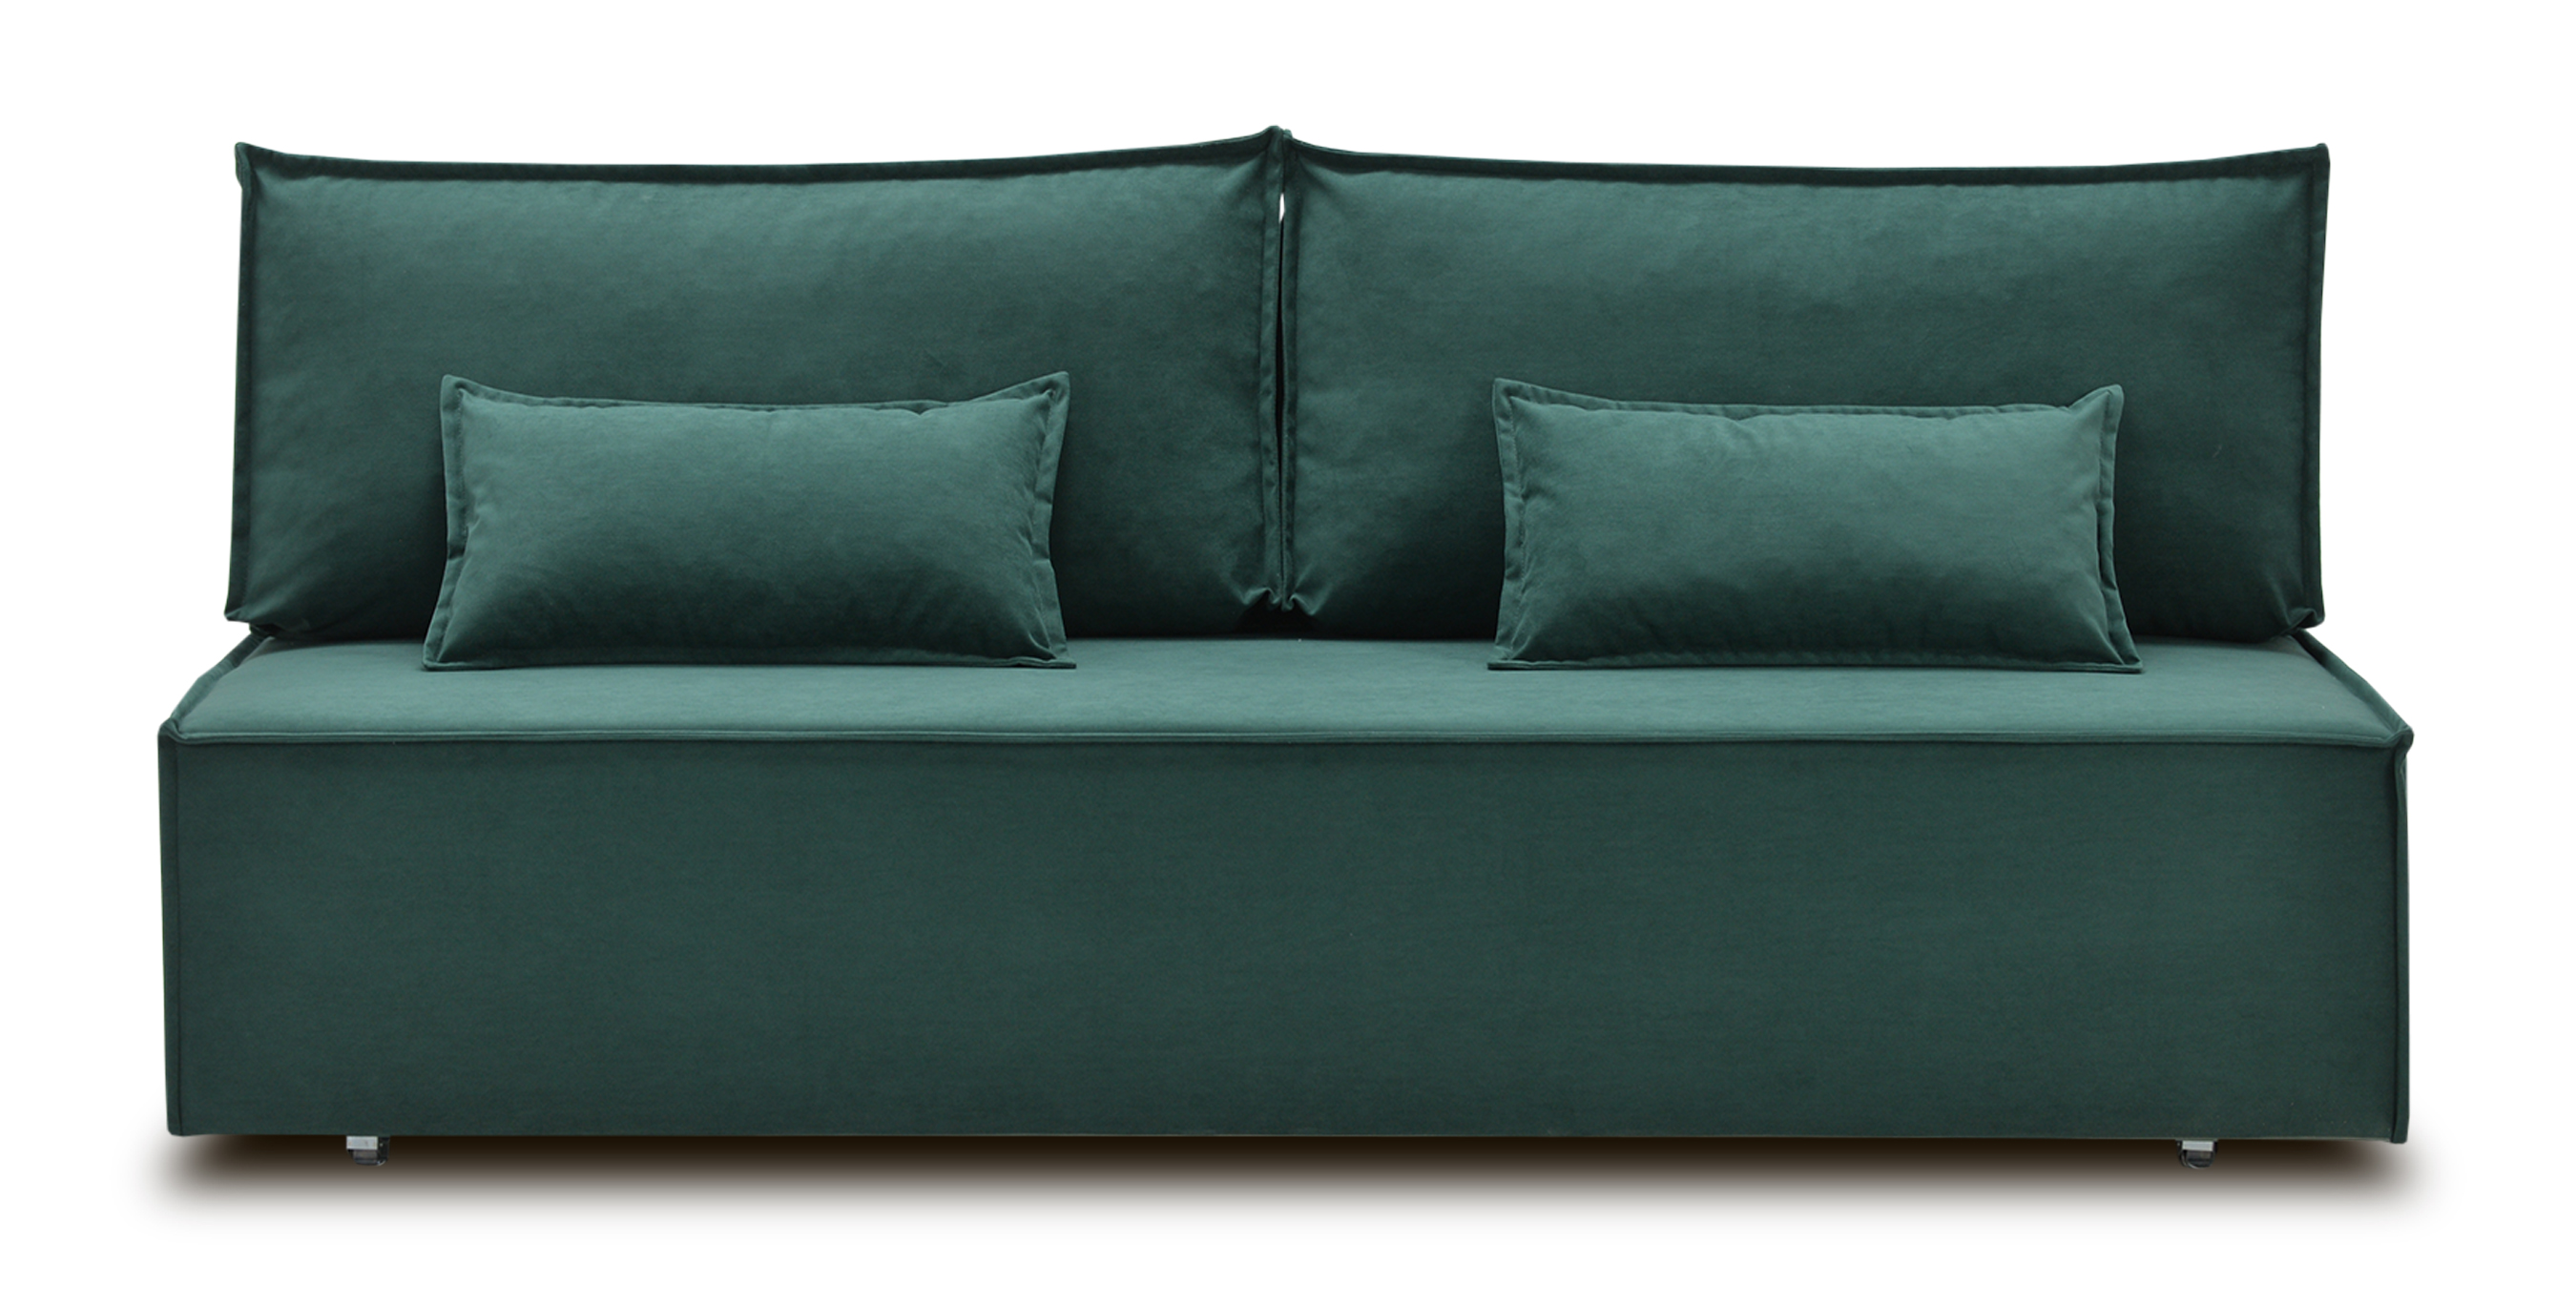 Диван-кровать «Фабио II» без подлокотников Ultra forest рогожка зеленый купить от 38500 руб. в интернет-магазине Фабрики PUSHE в Москве